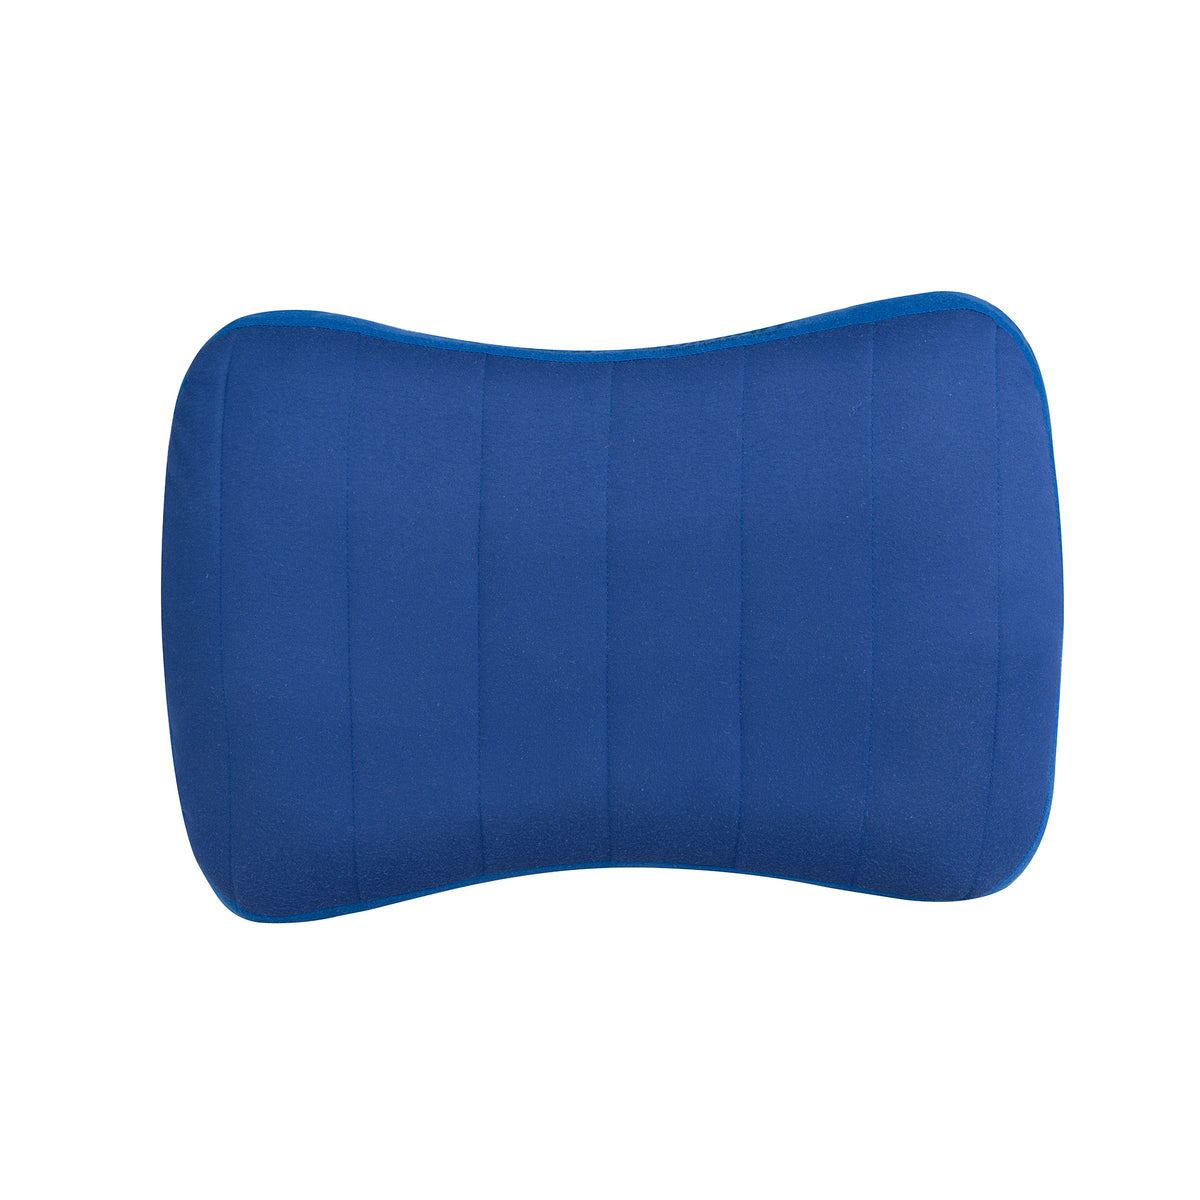  Inflatable Lumbar Pillow for Airplane Travel Lumbar